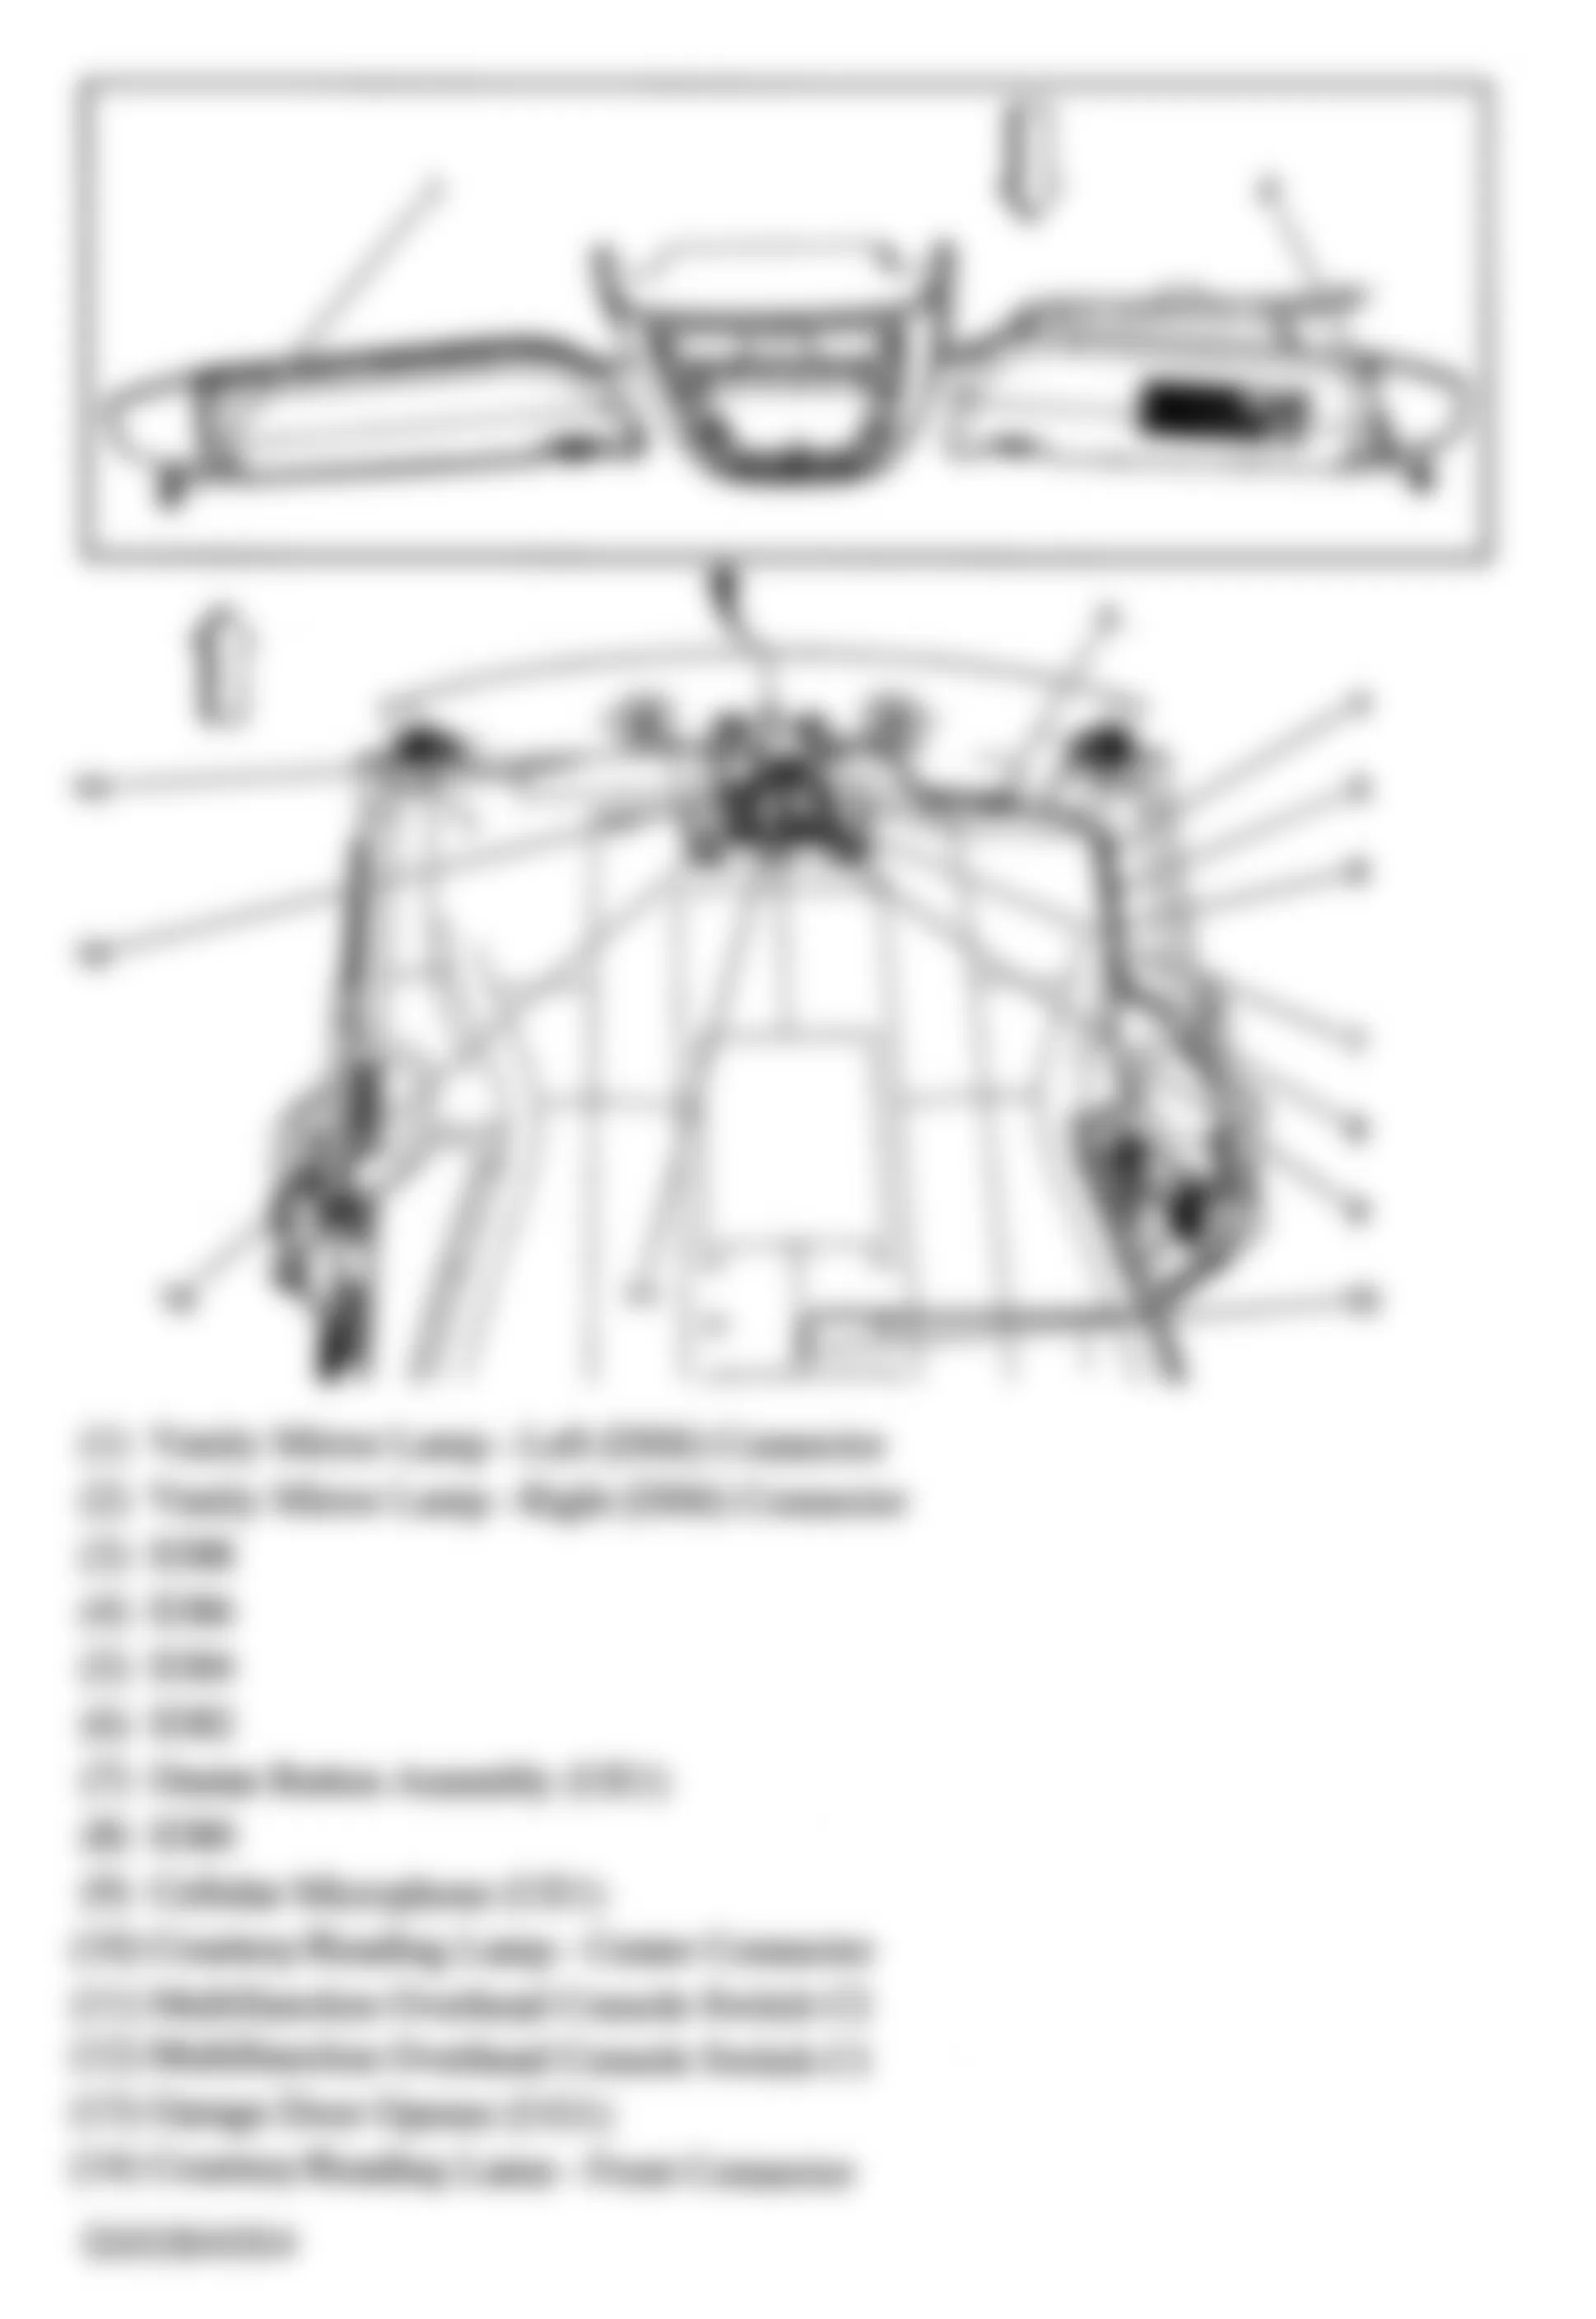 Buick Terraza CXL 2006 - Component Locations -  Headliner Harness Components